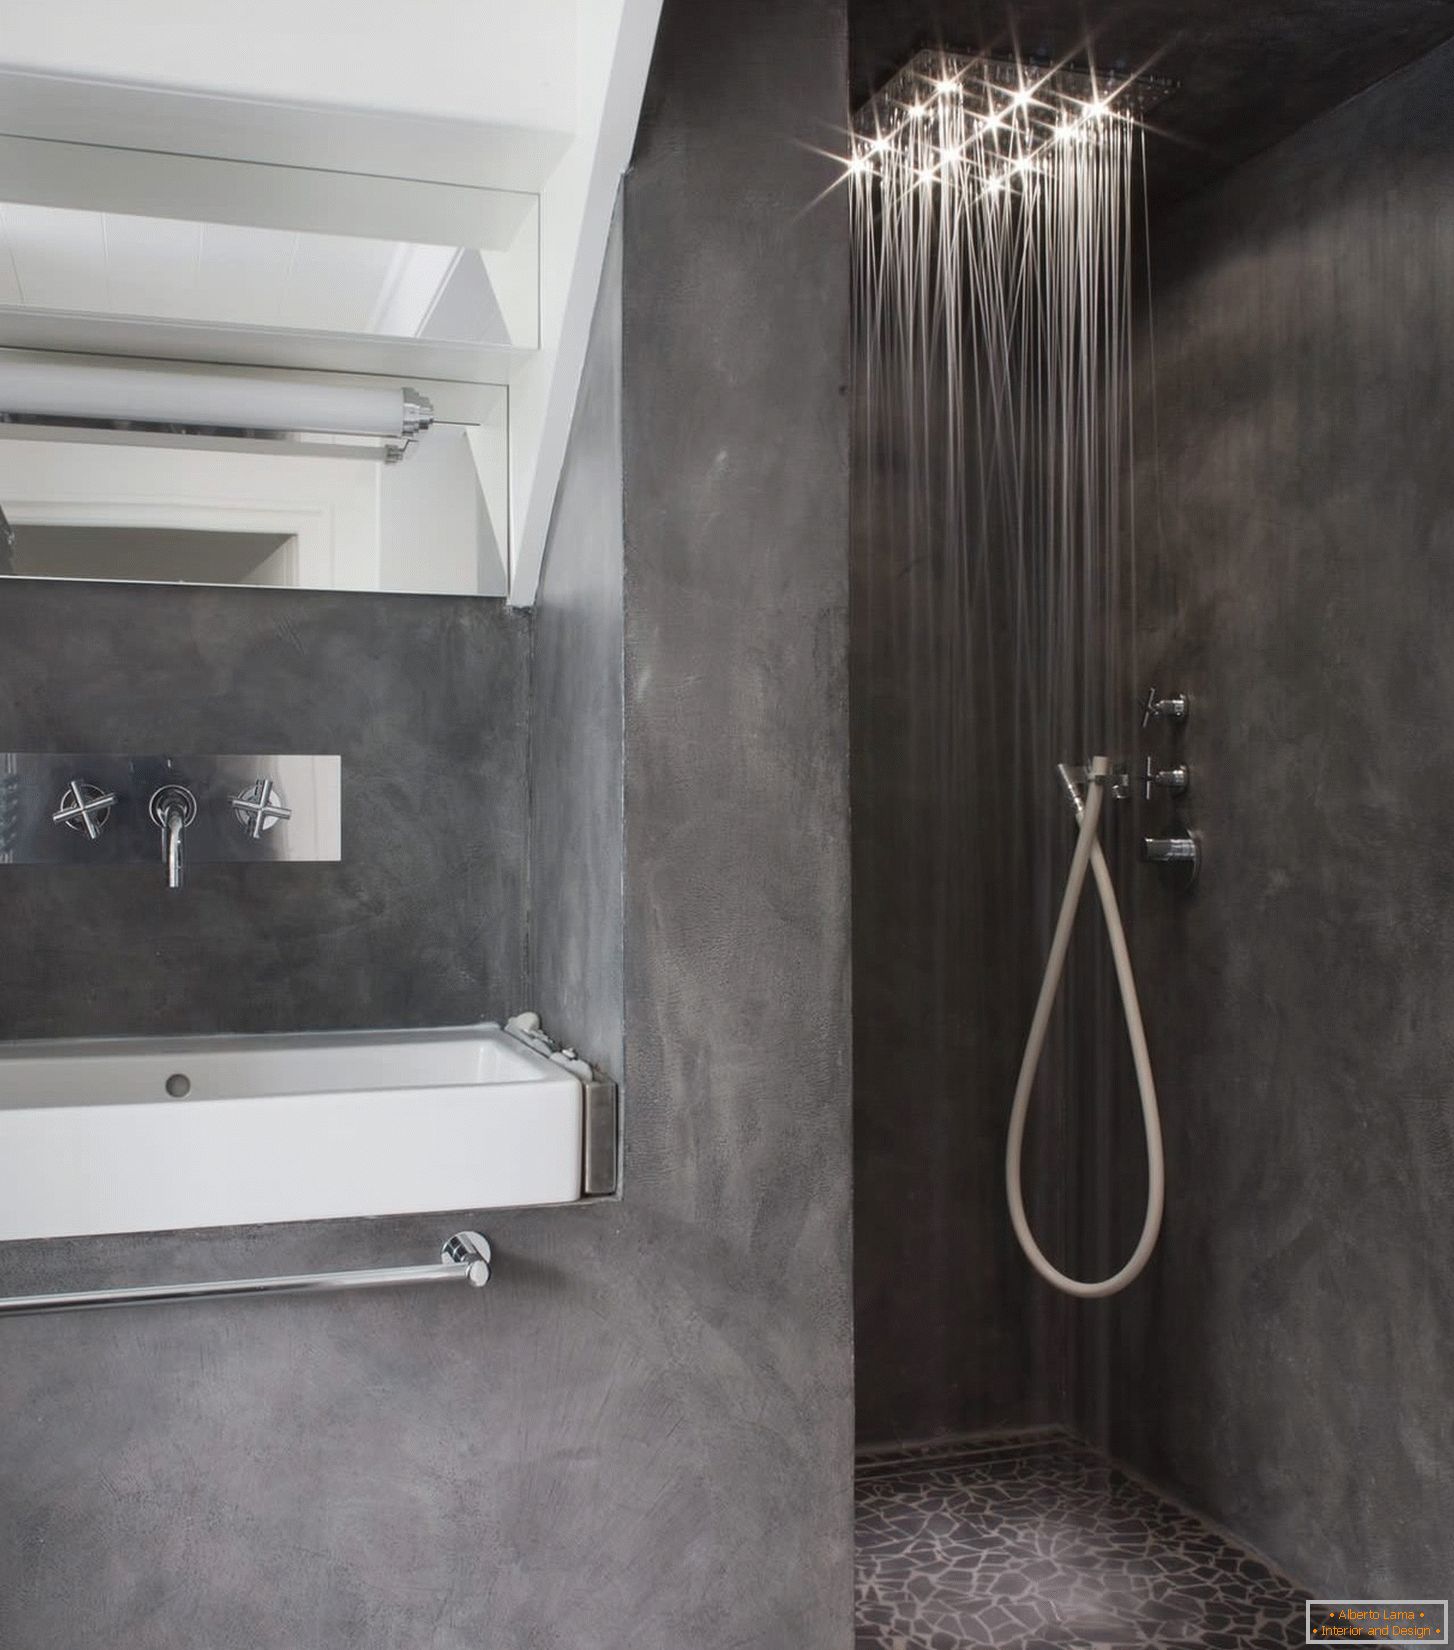 Schattierungen von Schwarz im Design des Badezimmers